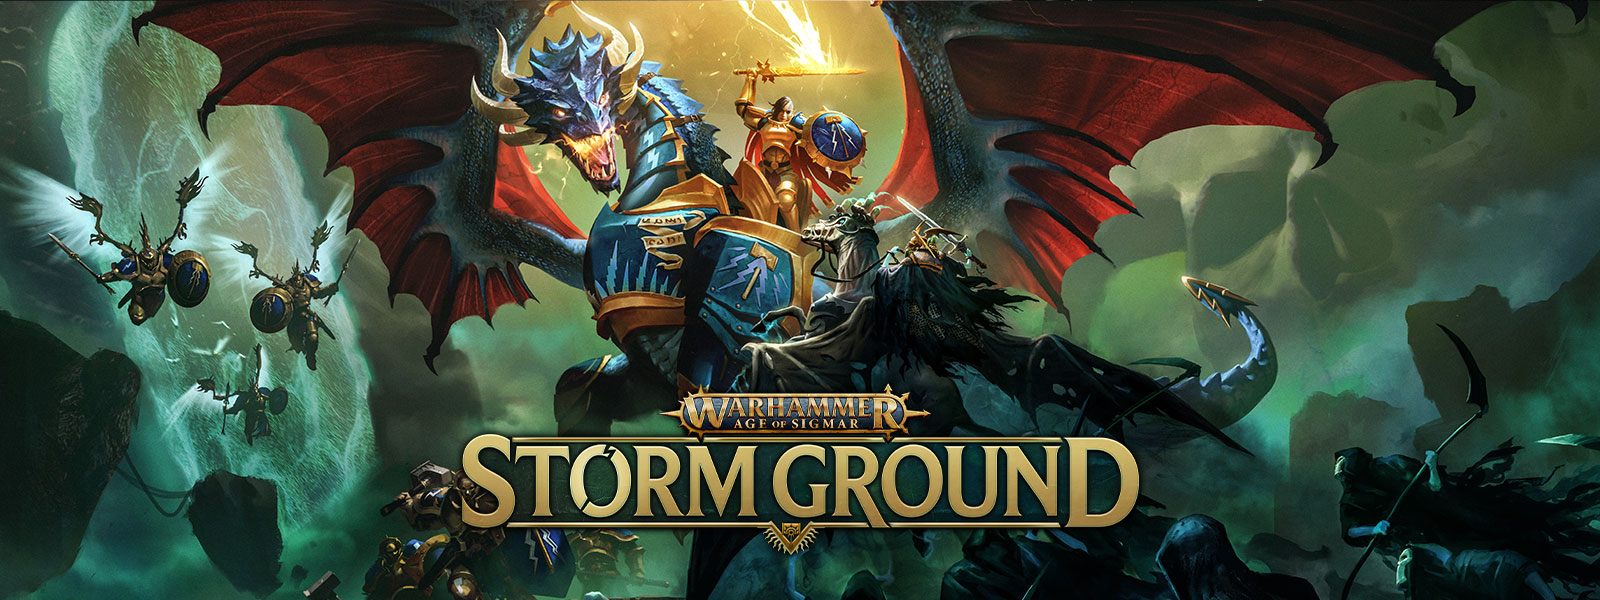 Warhammer Age of Sigmar: Storm Ground, En kriger, der rider på en pansret drage, kæmper mod en skelethær fra luften.